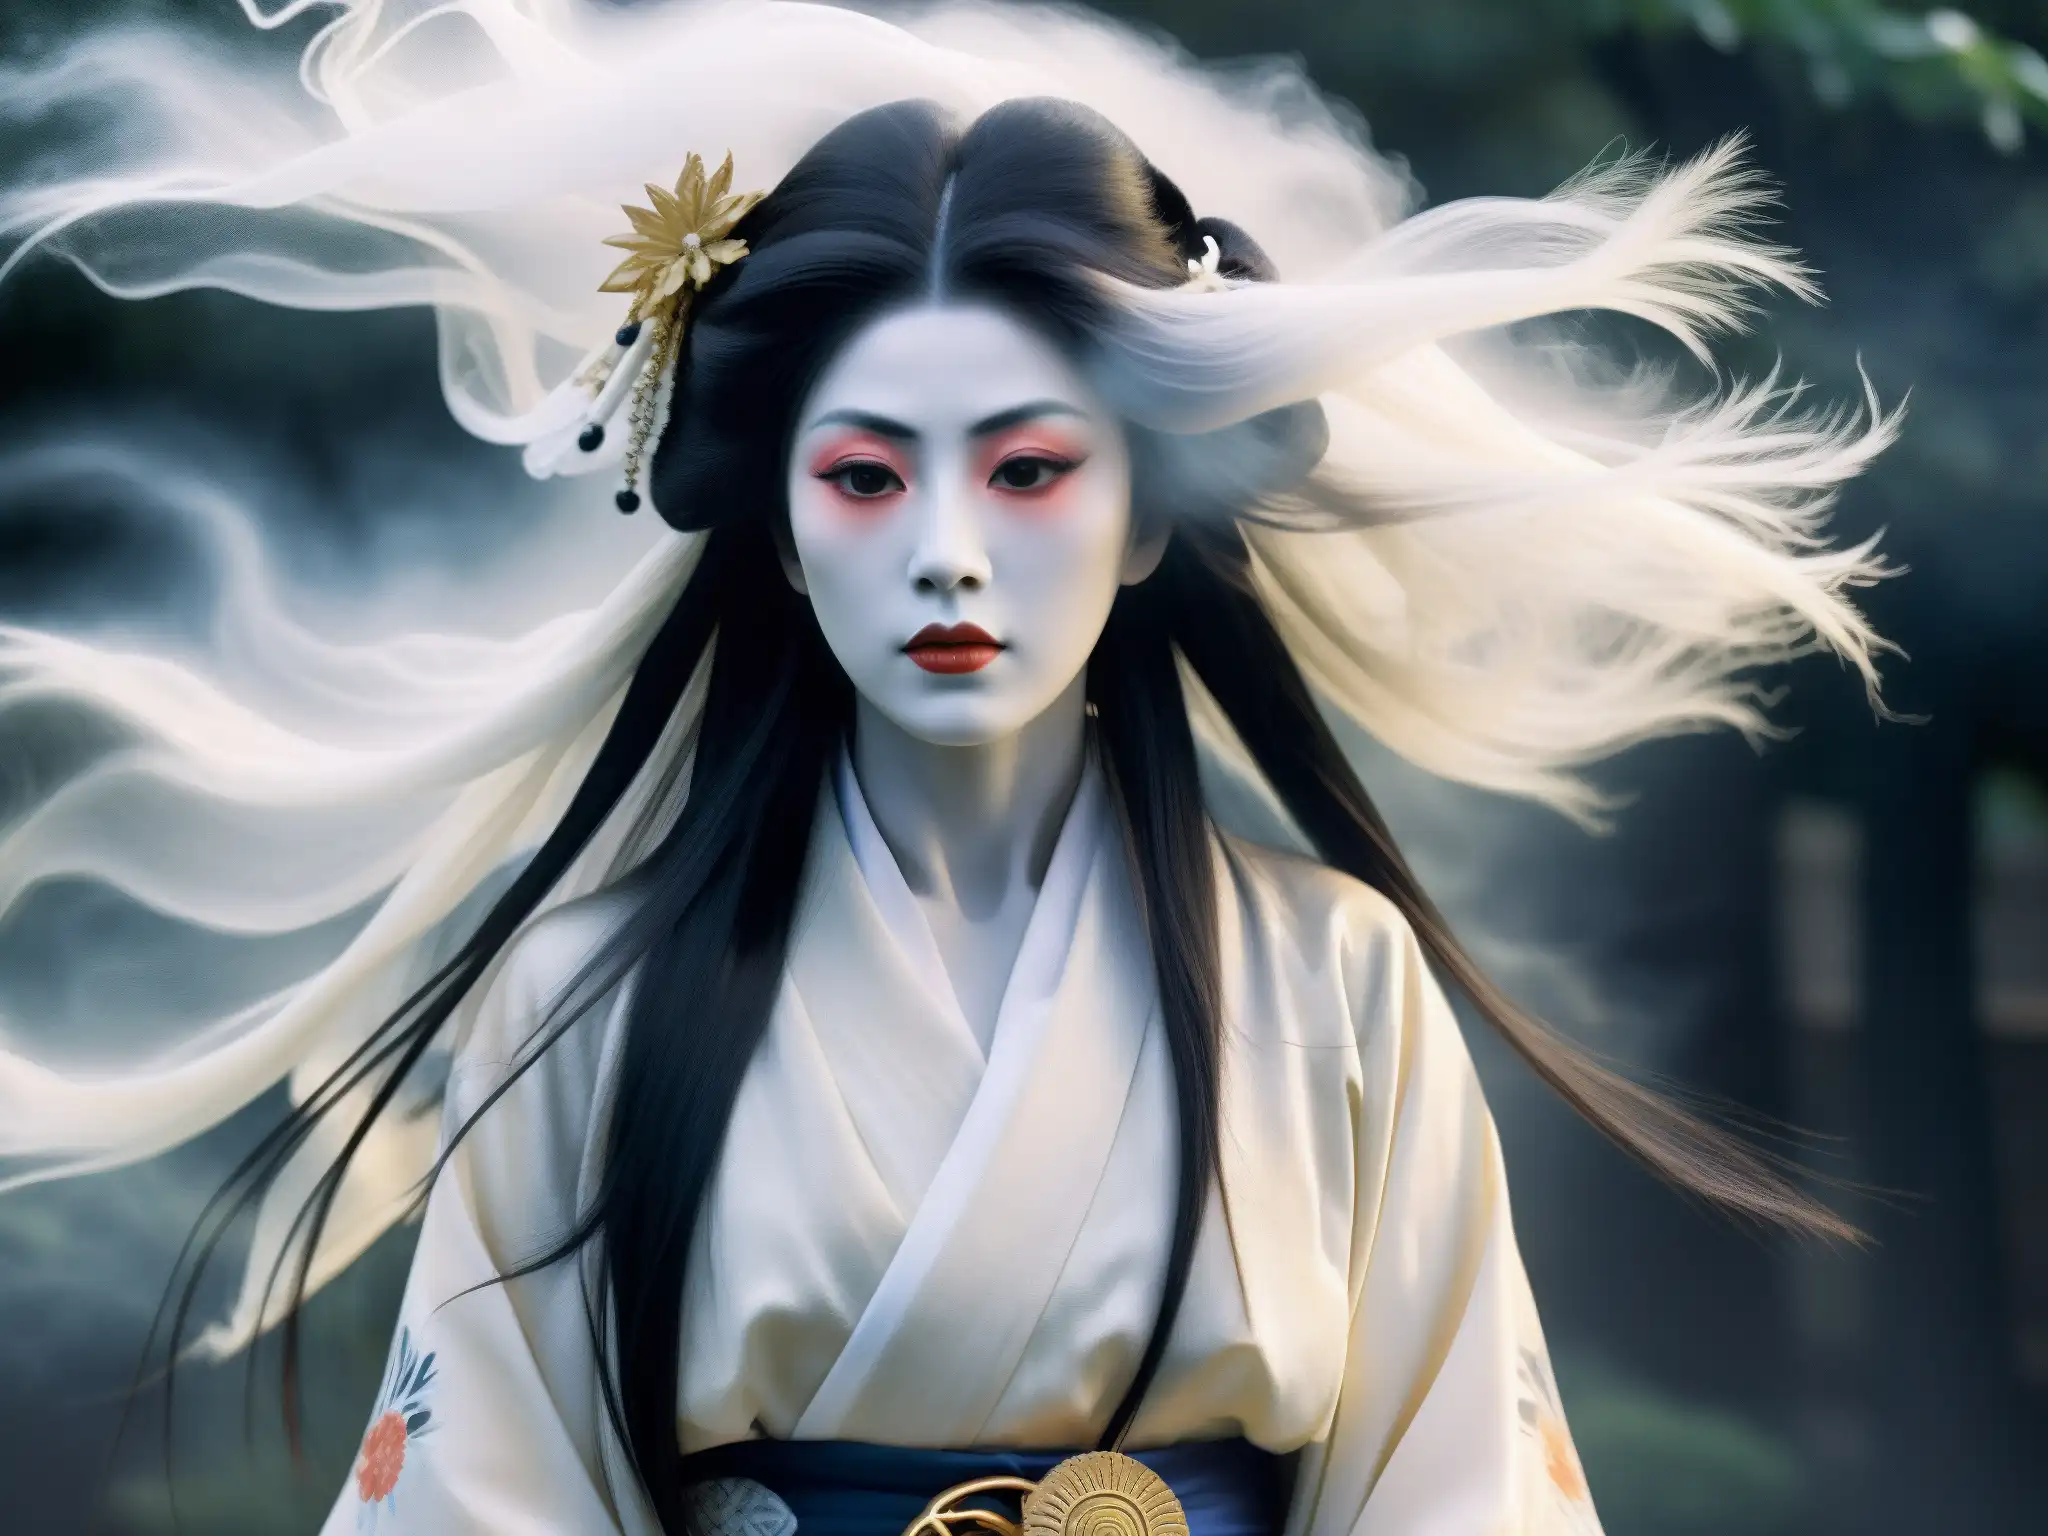 Detallada representación de un fantasma Ubume japonés con kimono blanco y cabello negro, rodeado de niebla etérea